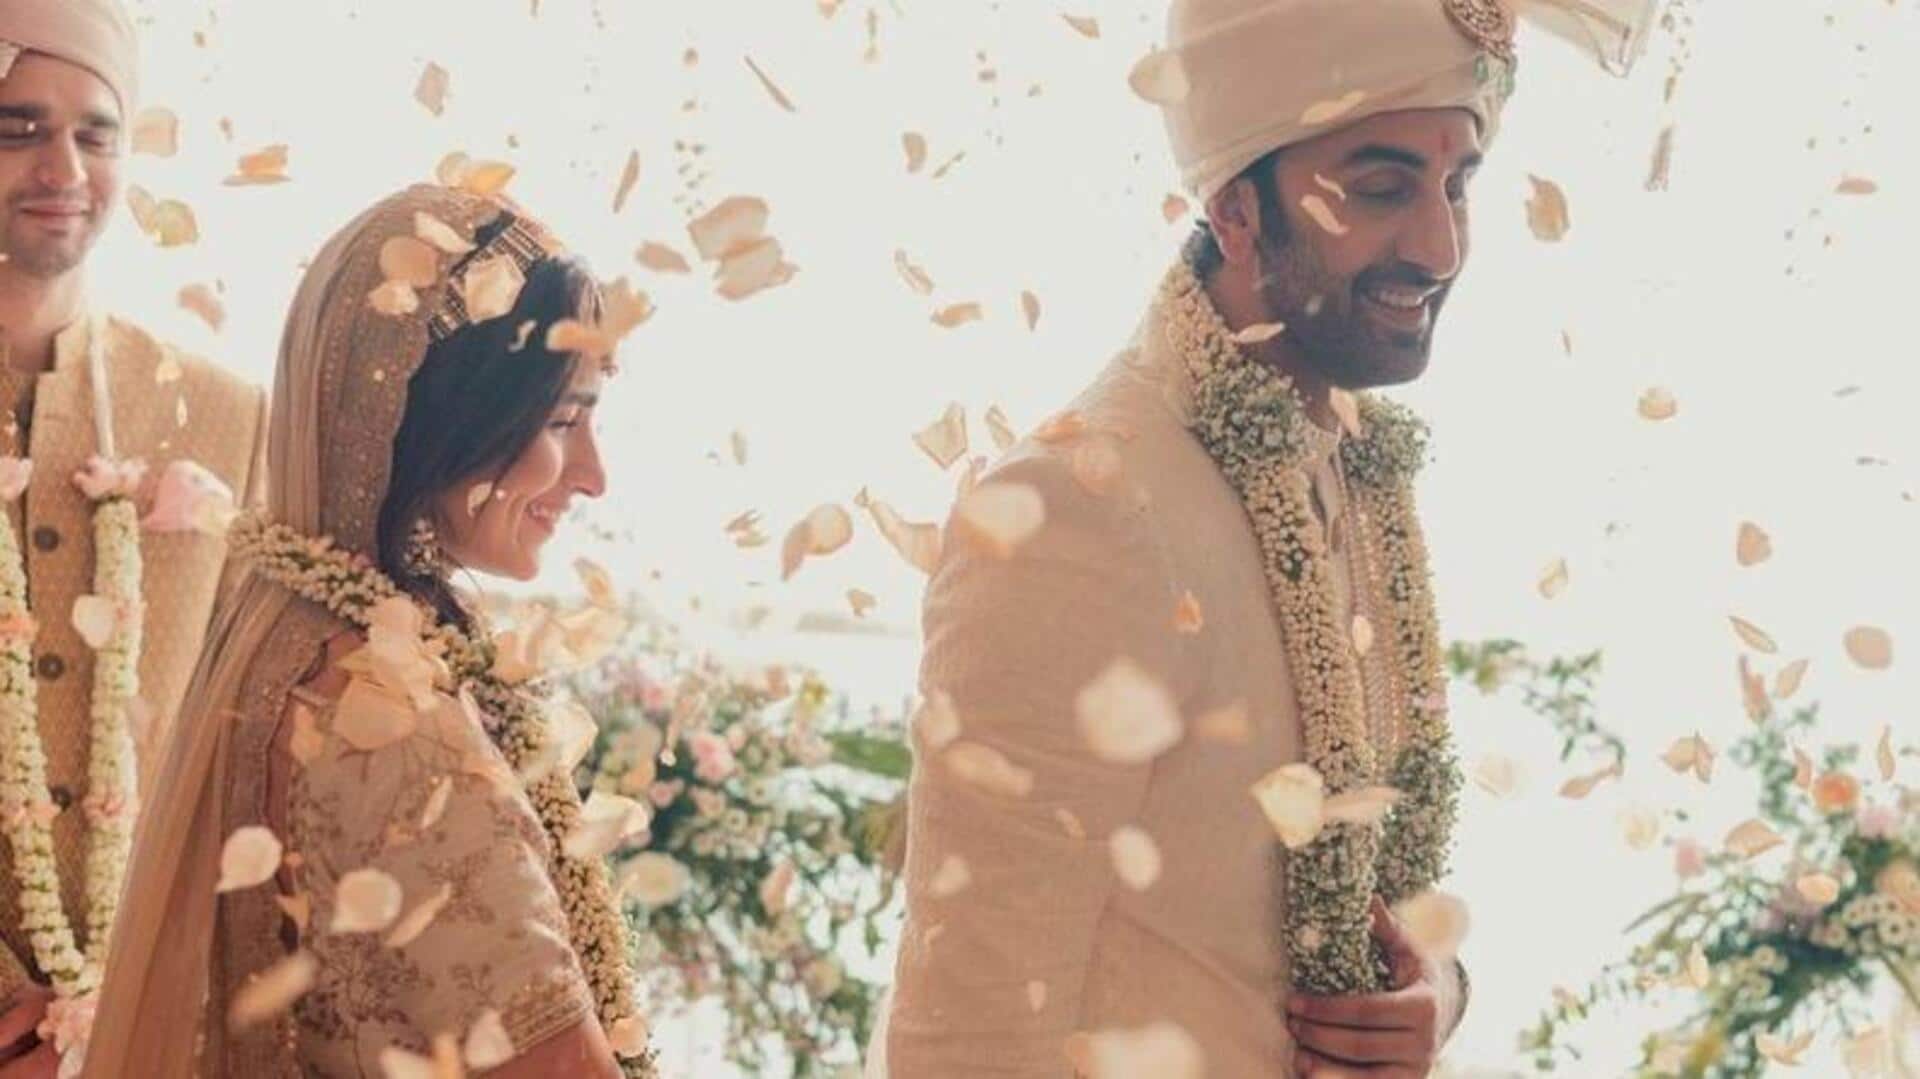 आलिया-रणबीर की शादी की पहली सालगिरह पर सोनी राजदान ने साझा की अनेदखी तस्वीरें 